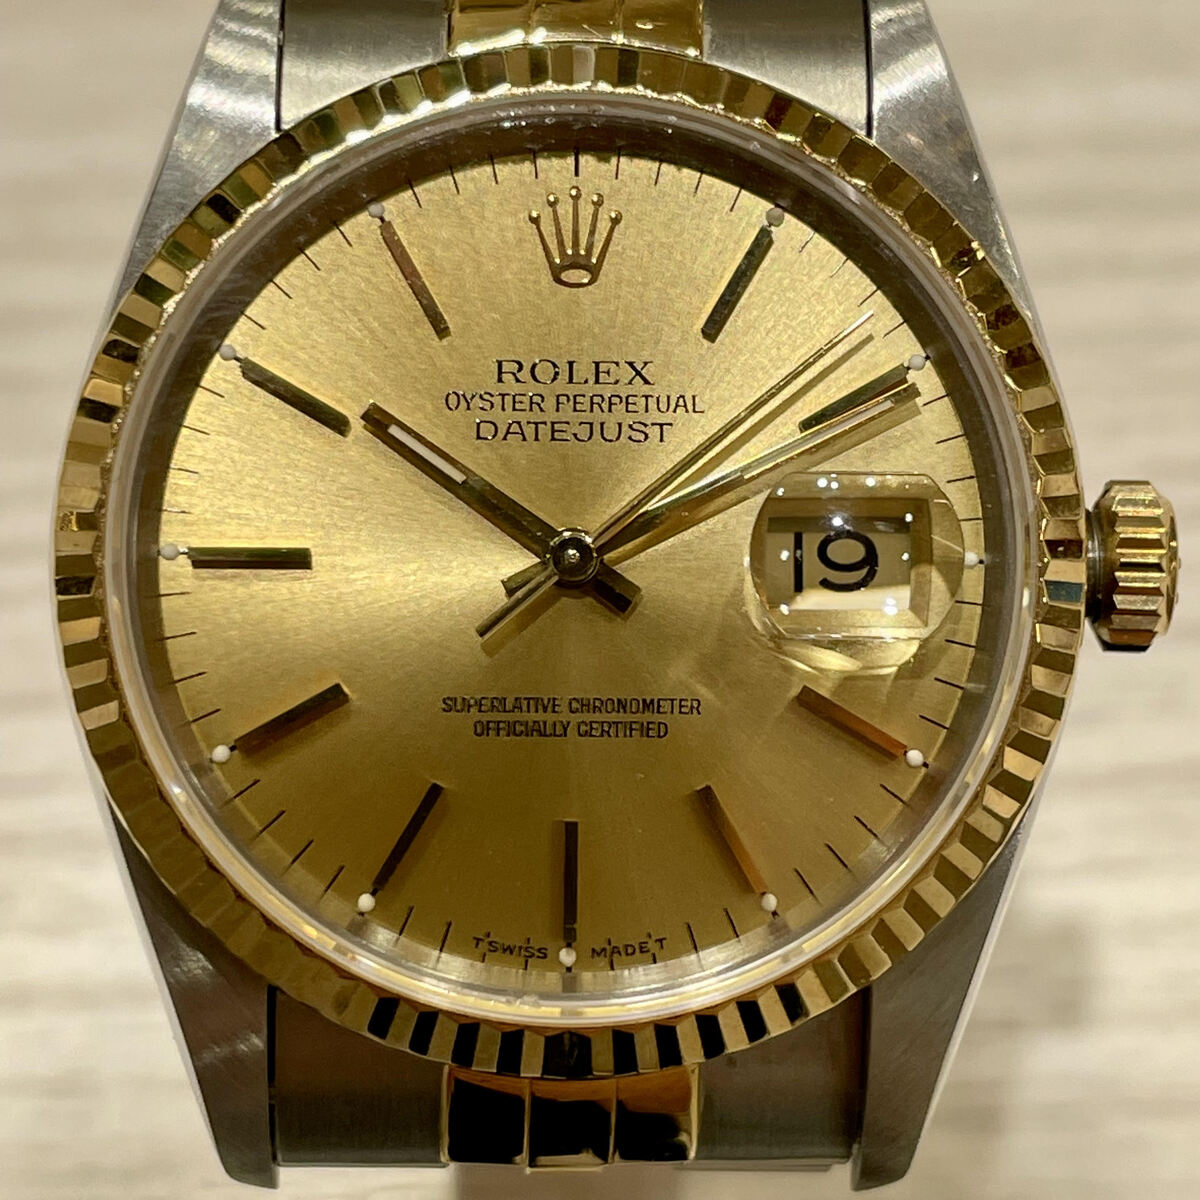 ロレックスのSS/YG 16233 S番 デイトジャスト 自動巻き時計の買取実績です。